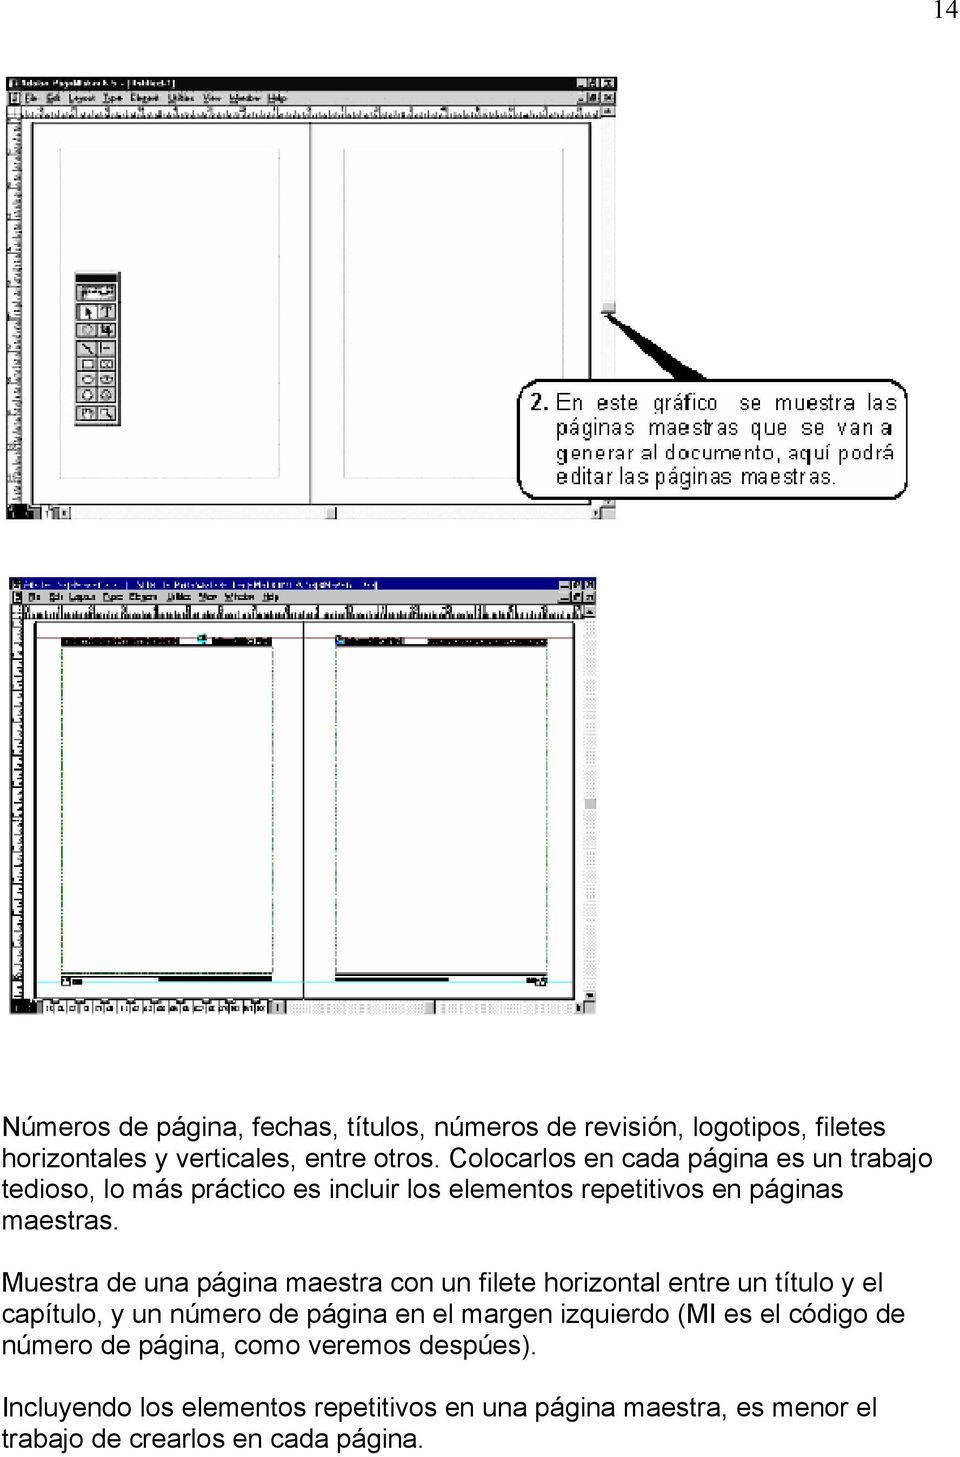 Muestra de una página maestra con un filete horizontal entre un título y el capítulo, y un número de página en el margen izquierdo (MI